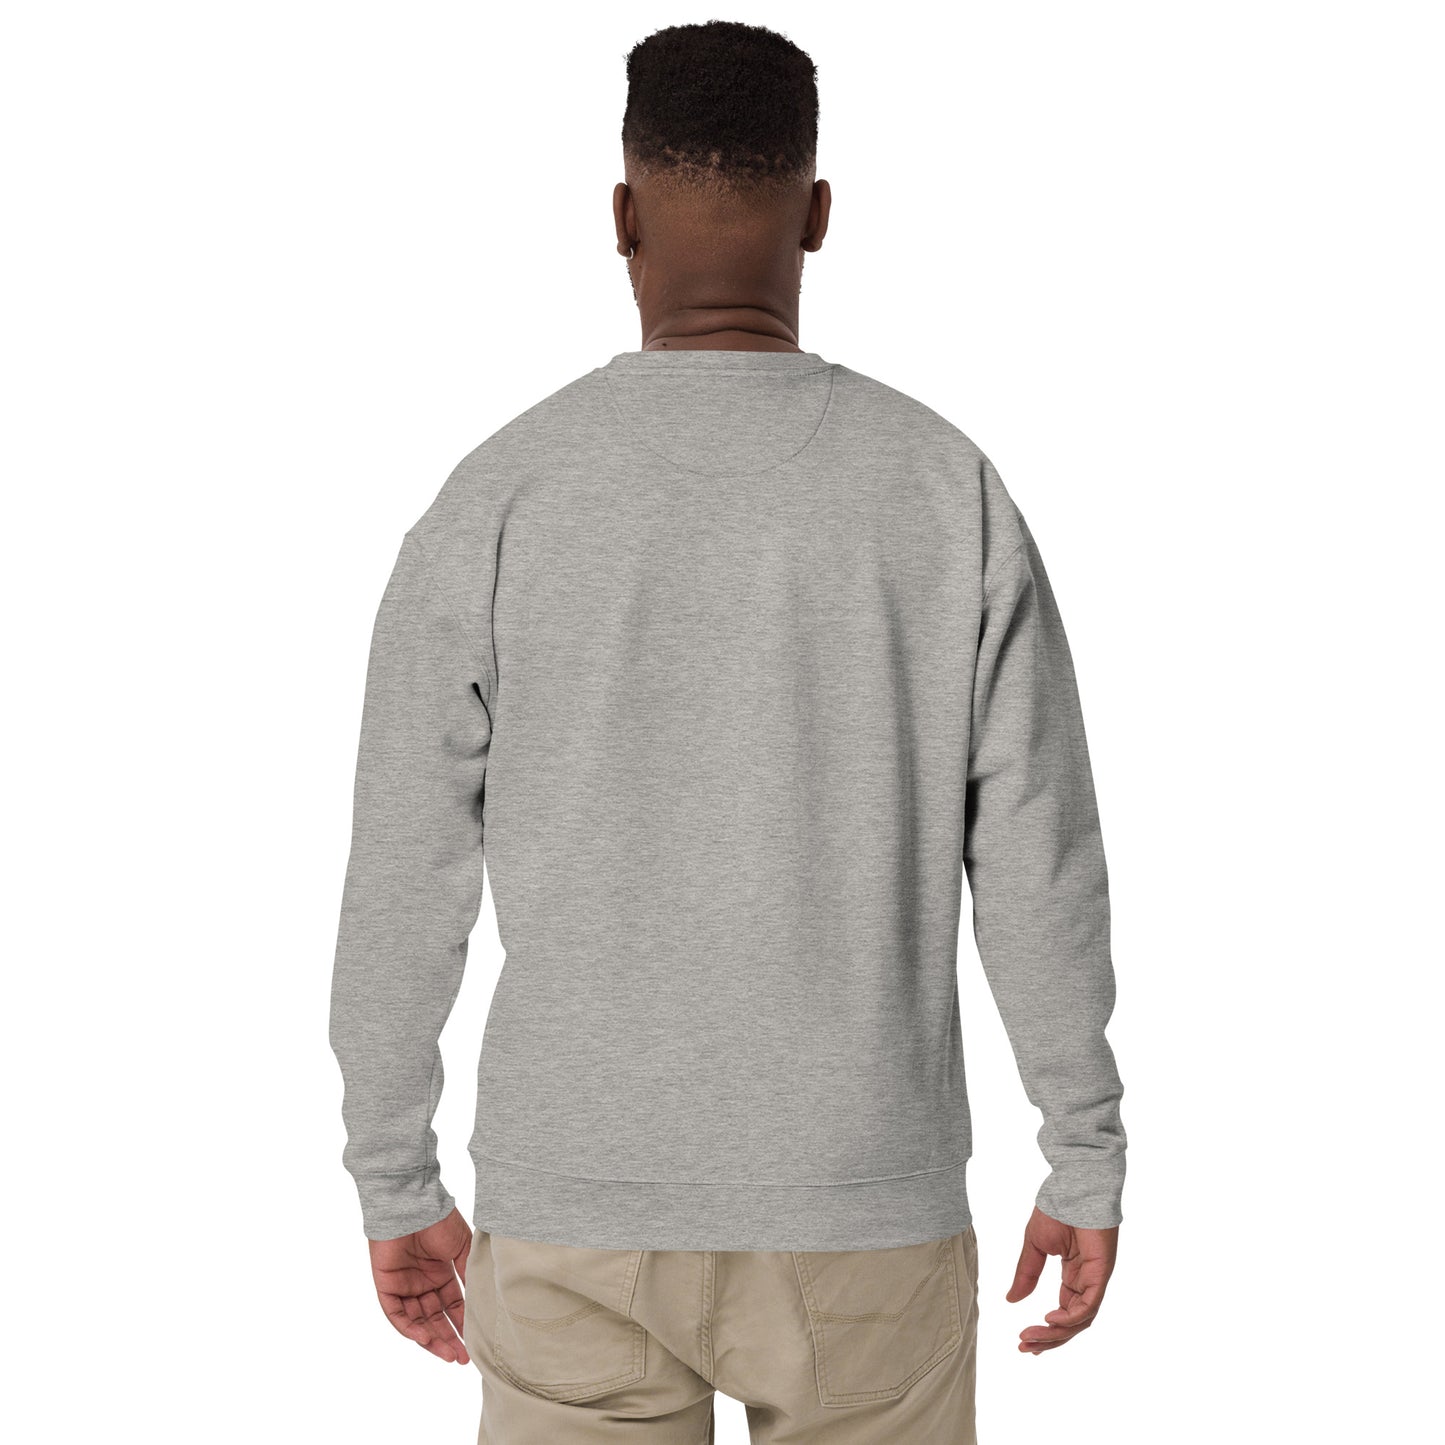 ENTJ MBTI Unisex Premium Sweatshirt